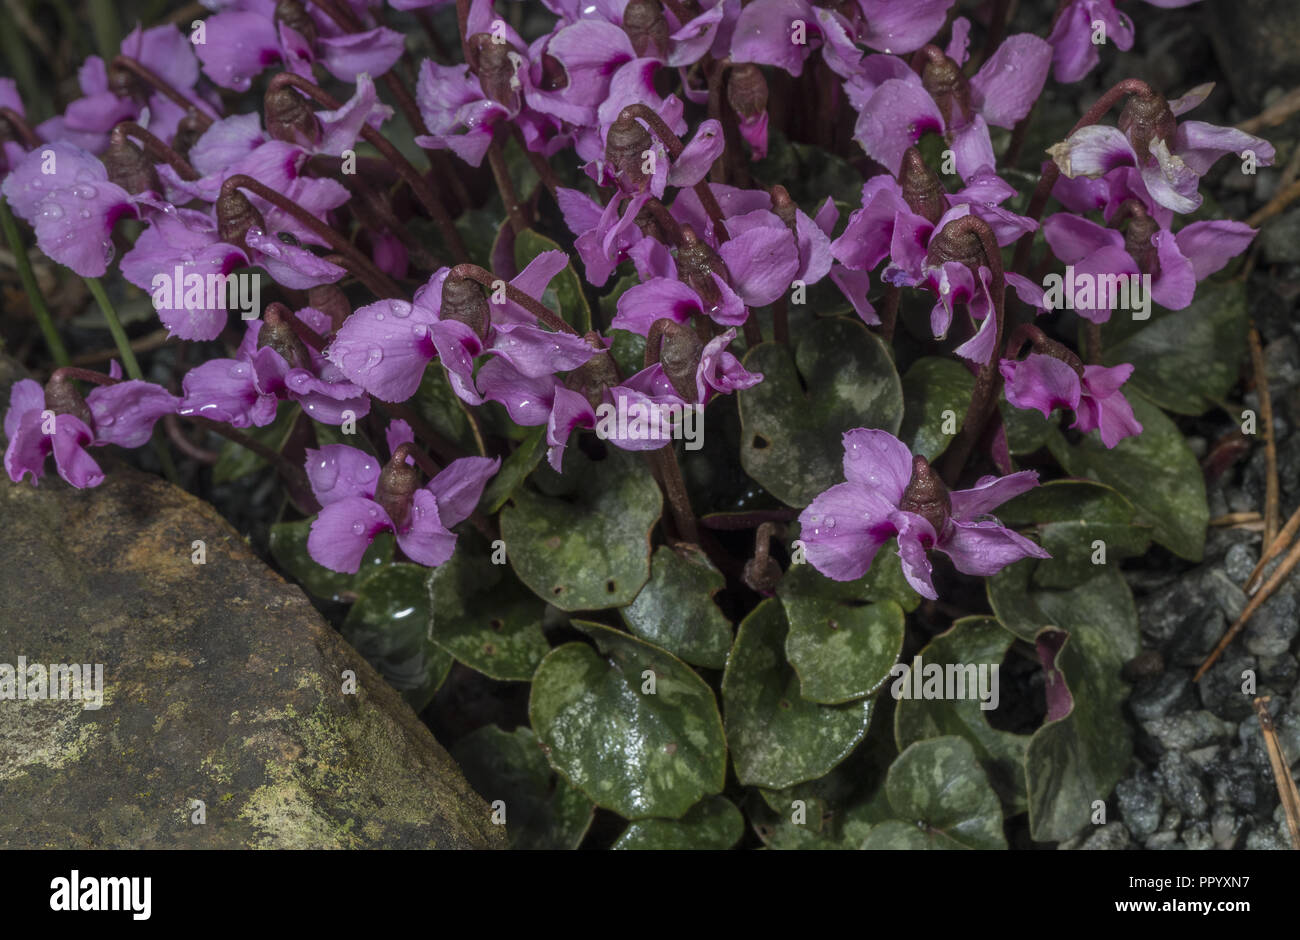 Eastern cyclamen, Cyclamen coum, in flower in early spring. Stock Photo